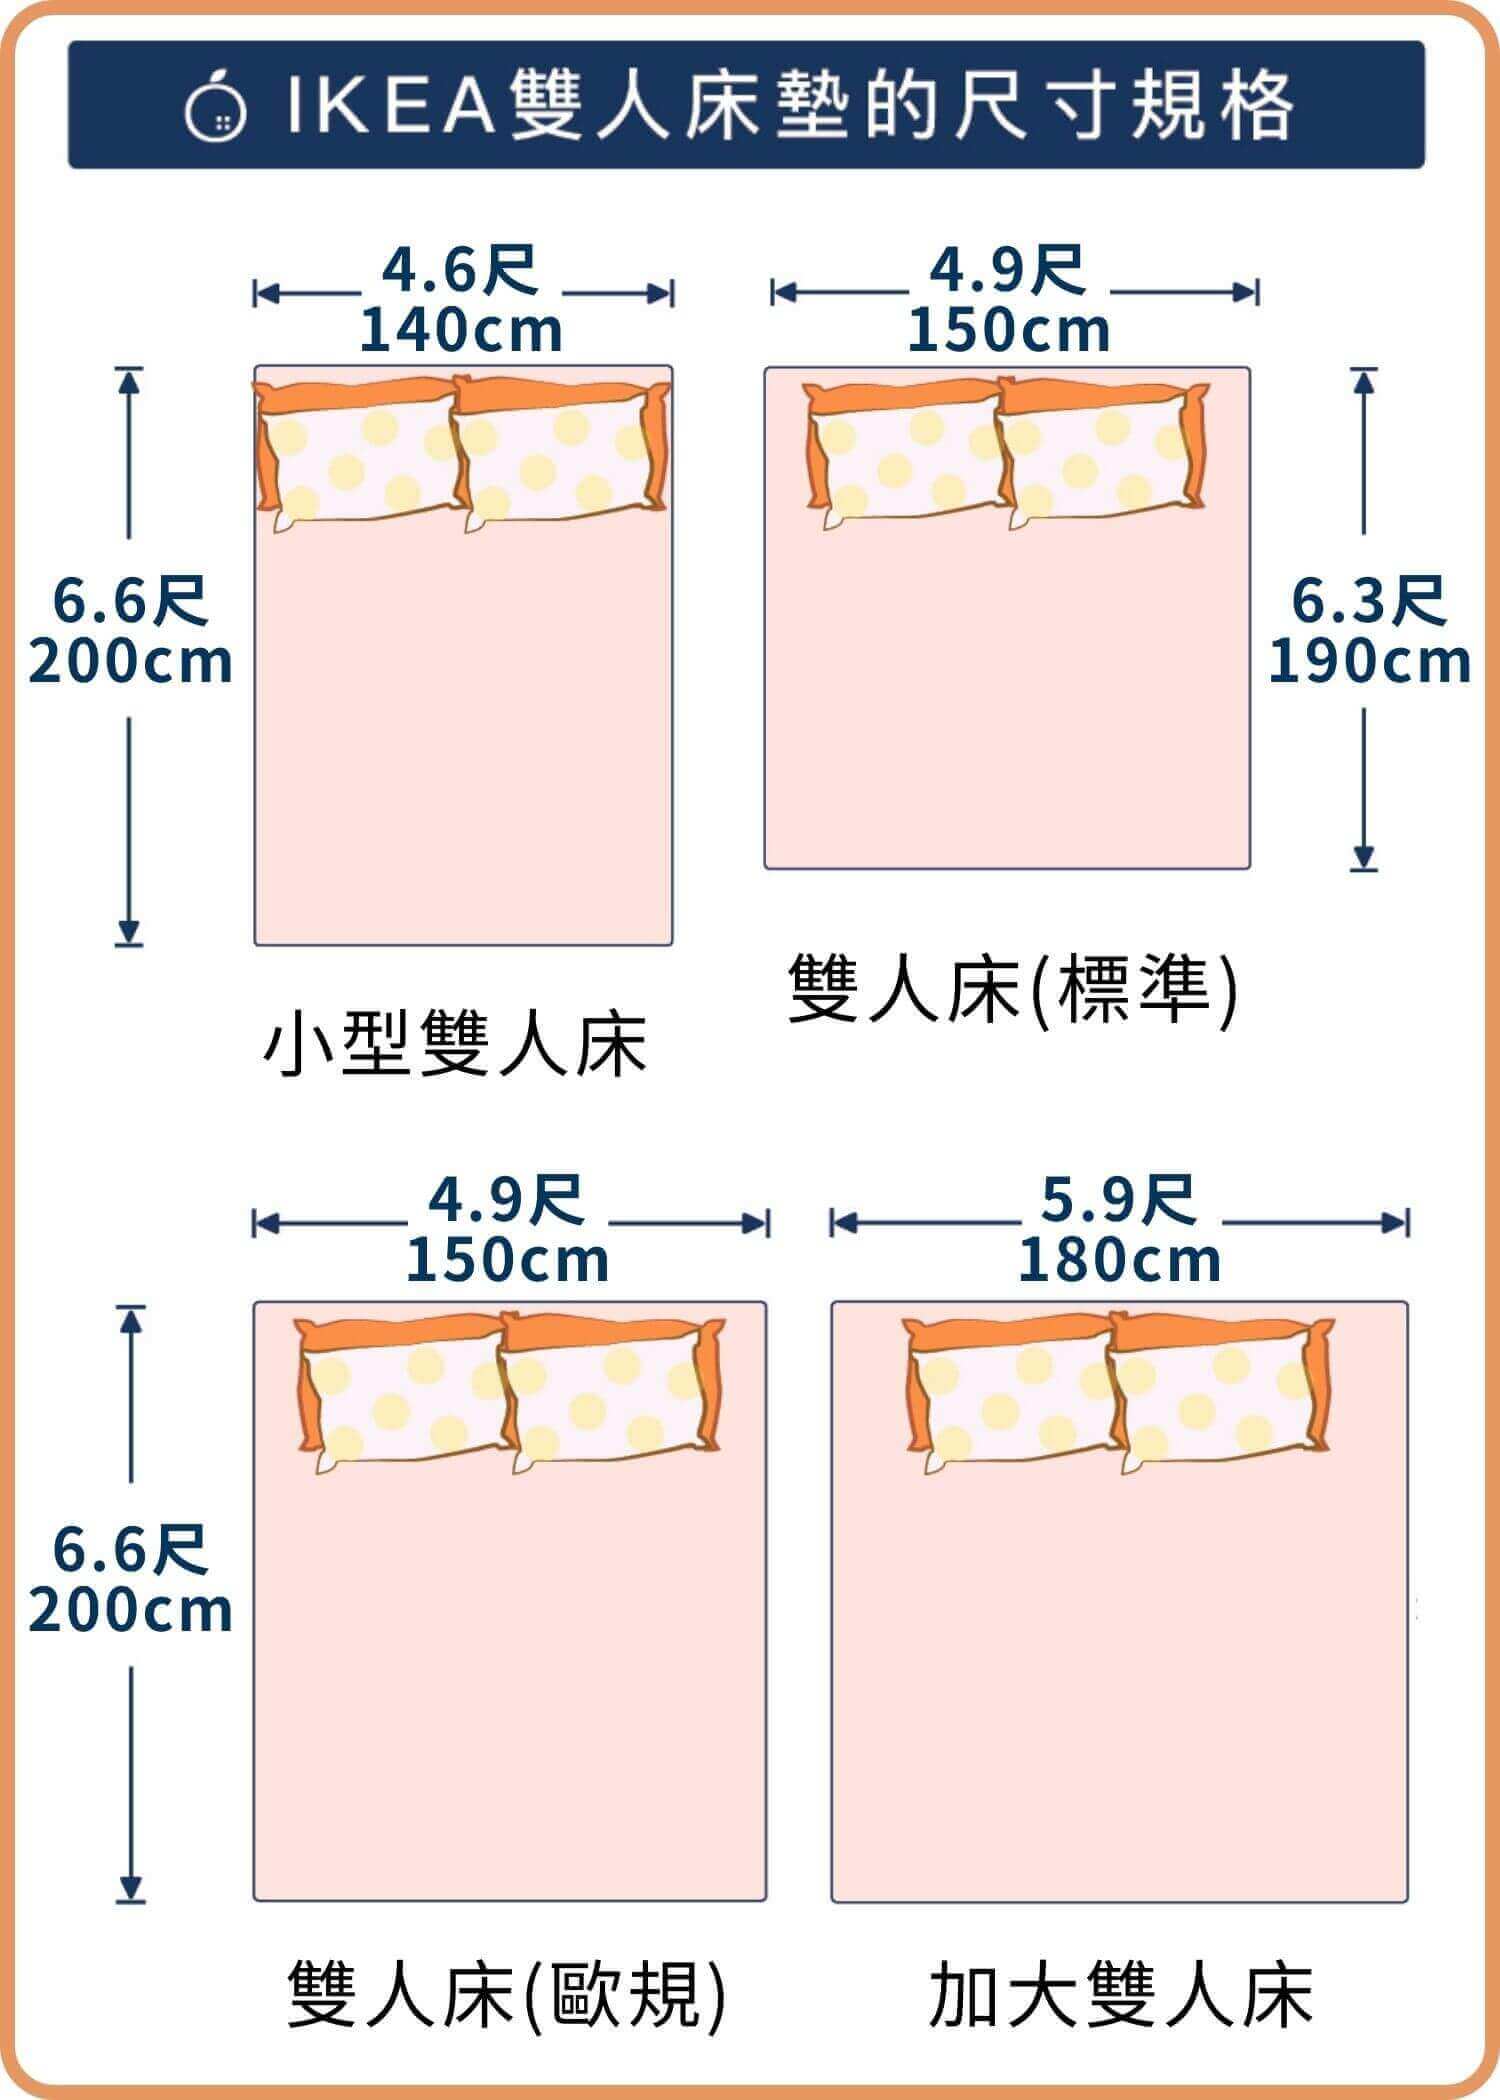 歐規(IKEA)雙人床墊尺寸規格